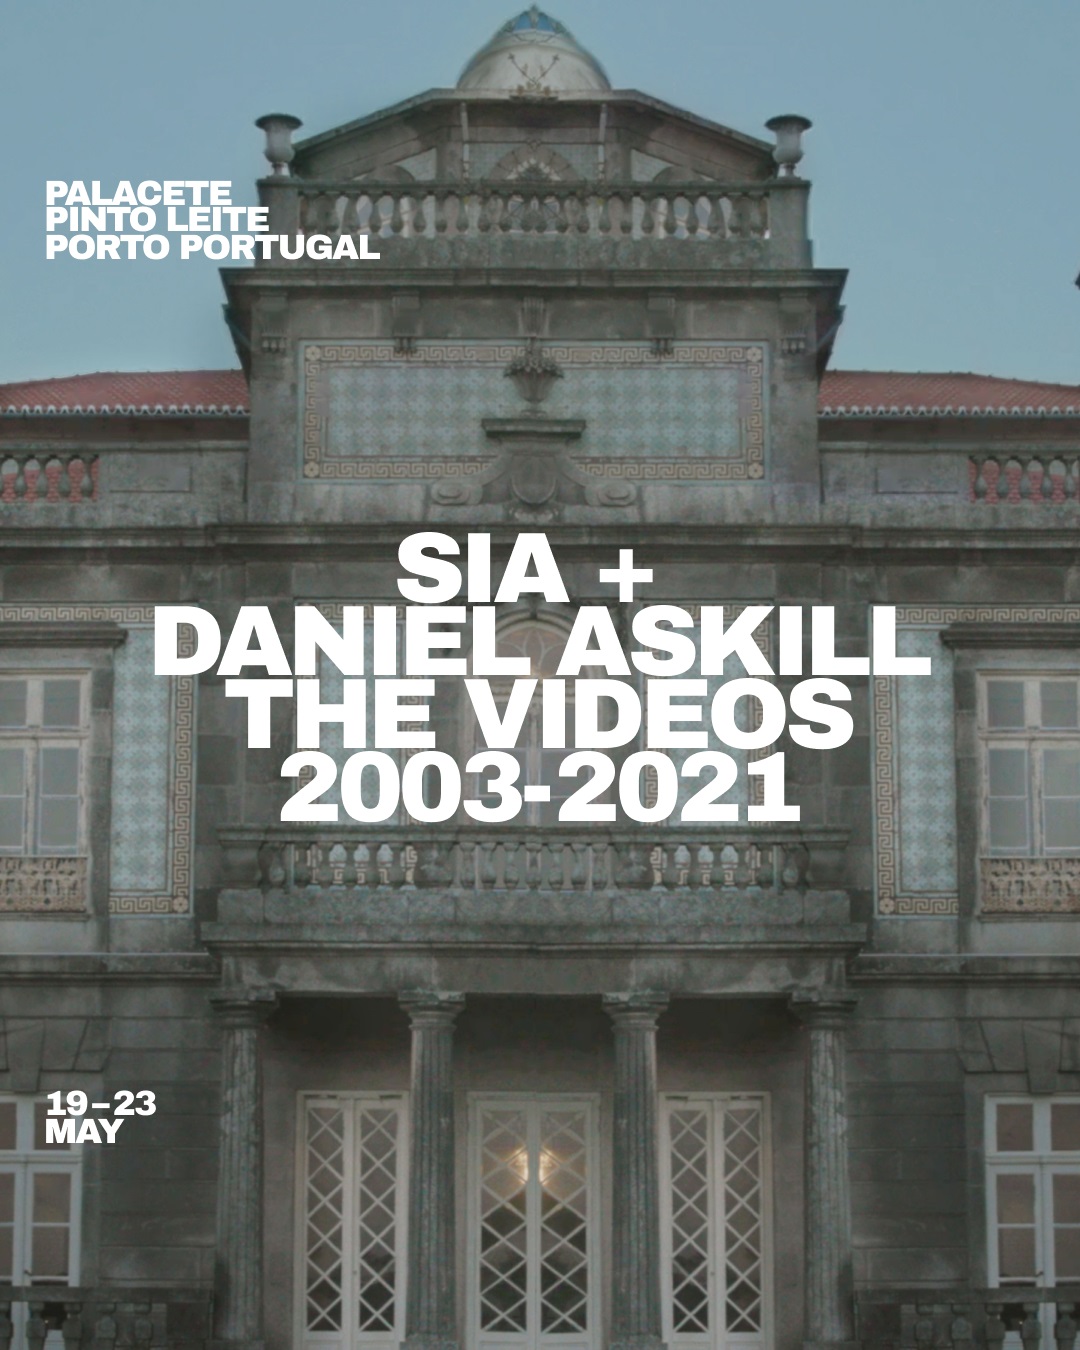 Sia + Daniel Askill The Videos 2003 - 2021 - Event